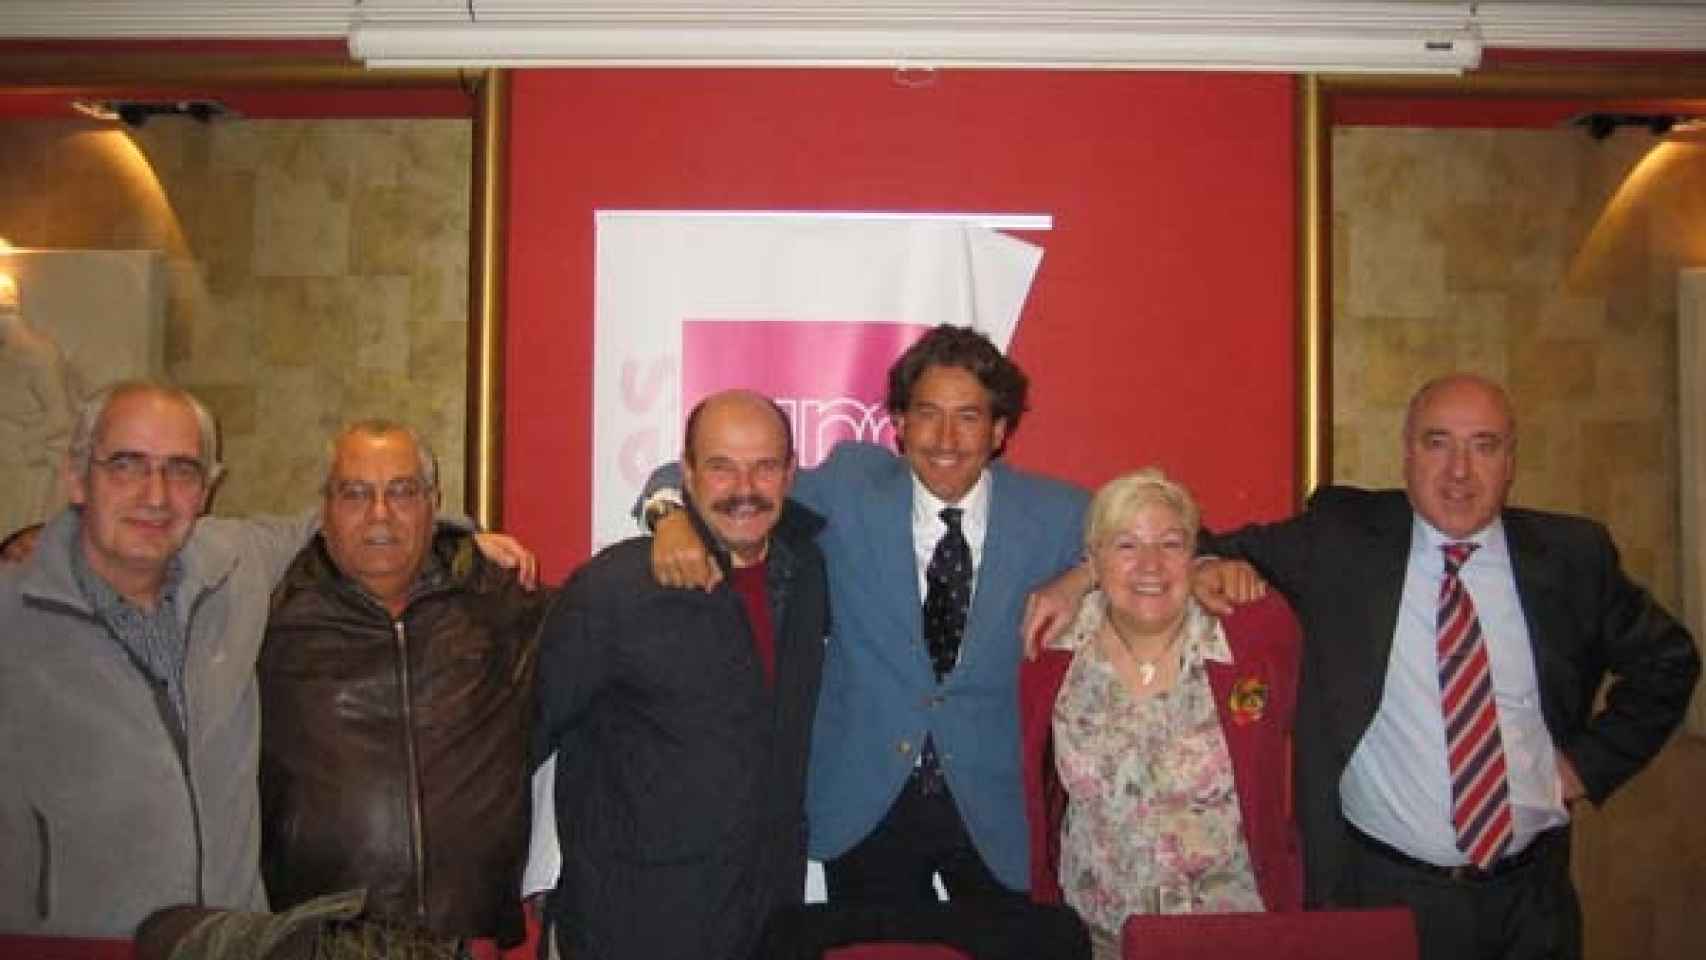 Álvaro de Marichalar en el centro con corbata junto a simpatizantes de UPyD en Soria